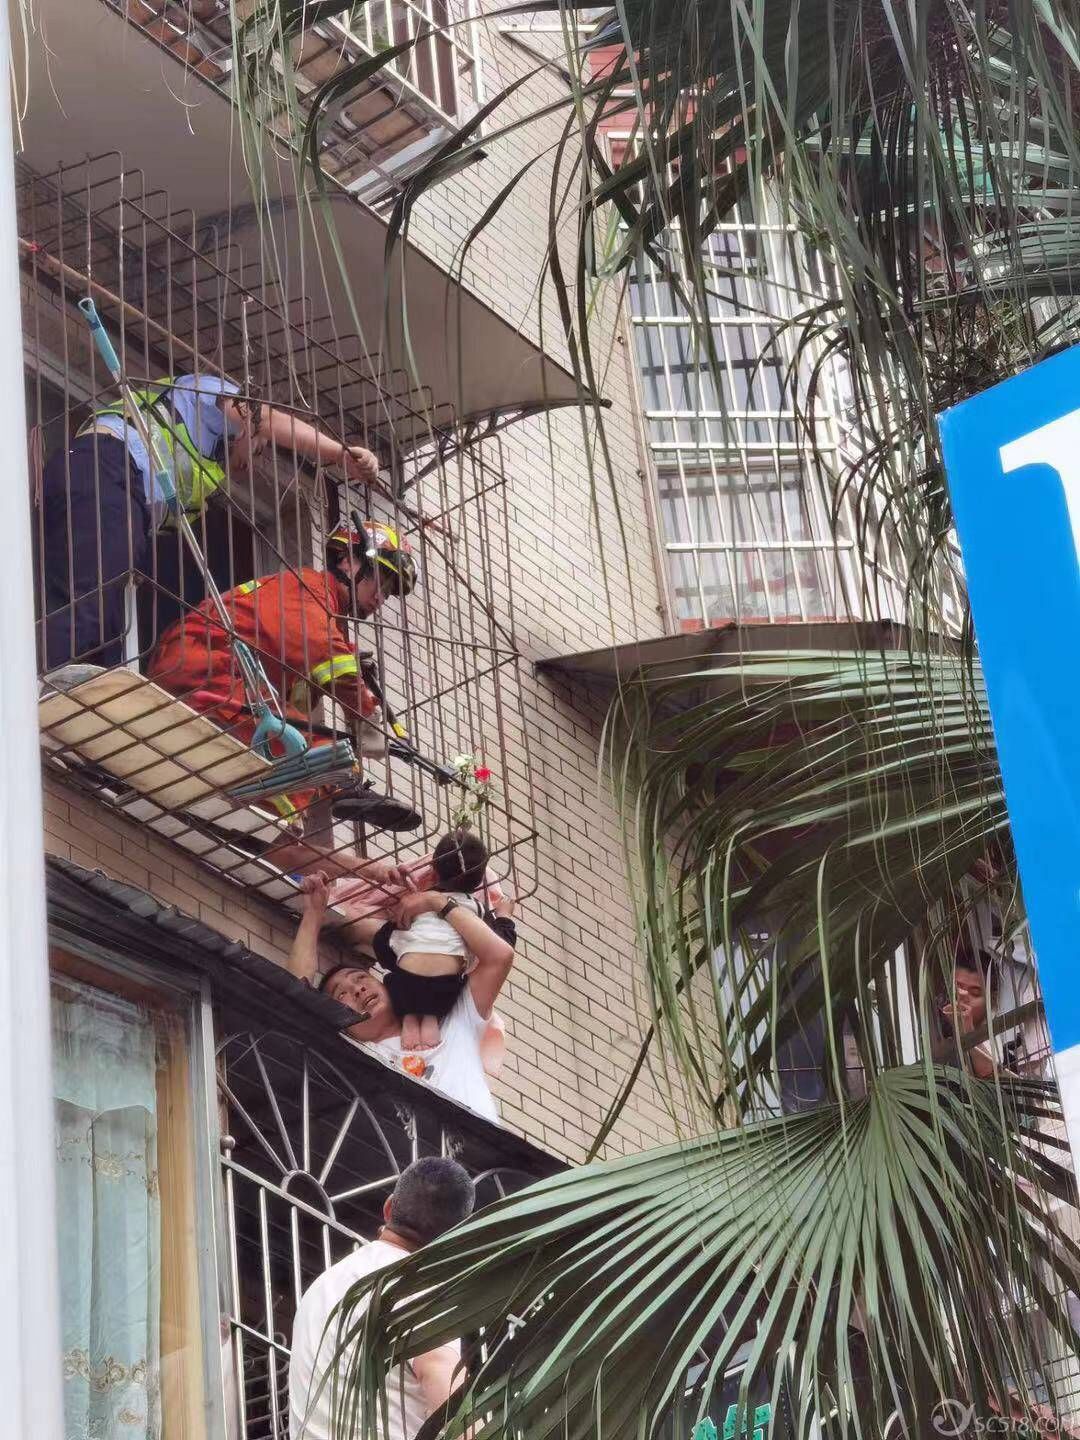 孩子|两岁孩子爬窗台寻找父母头部被卡防护栏 警民联手6分钟救出被困小孩